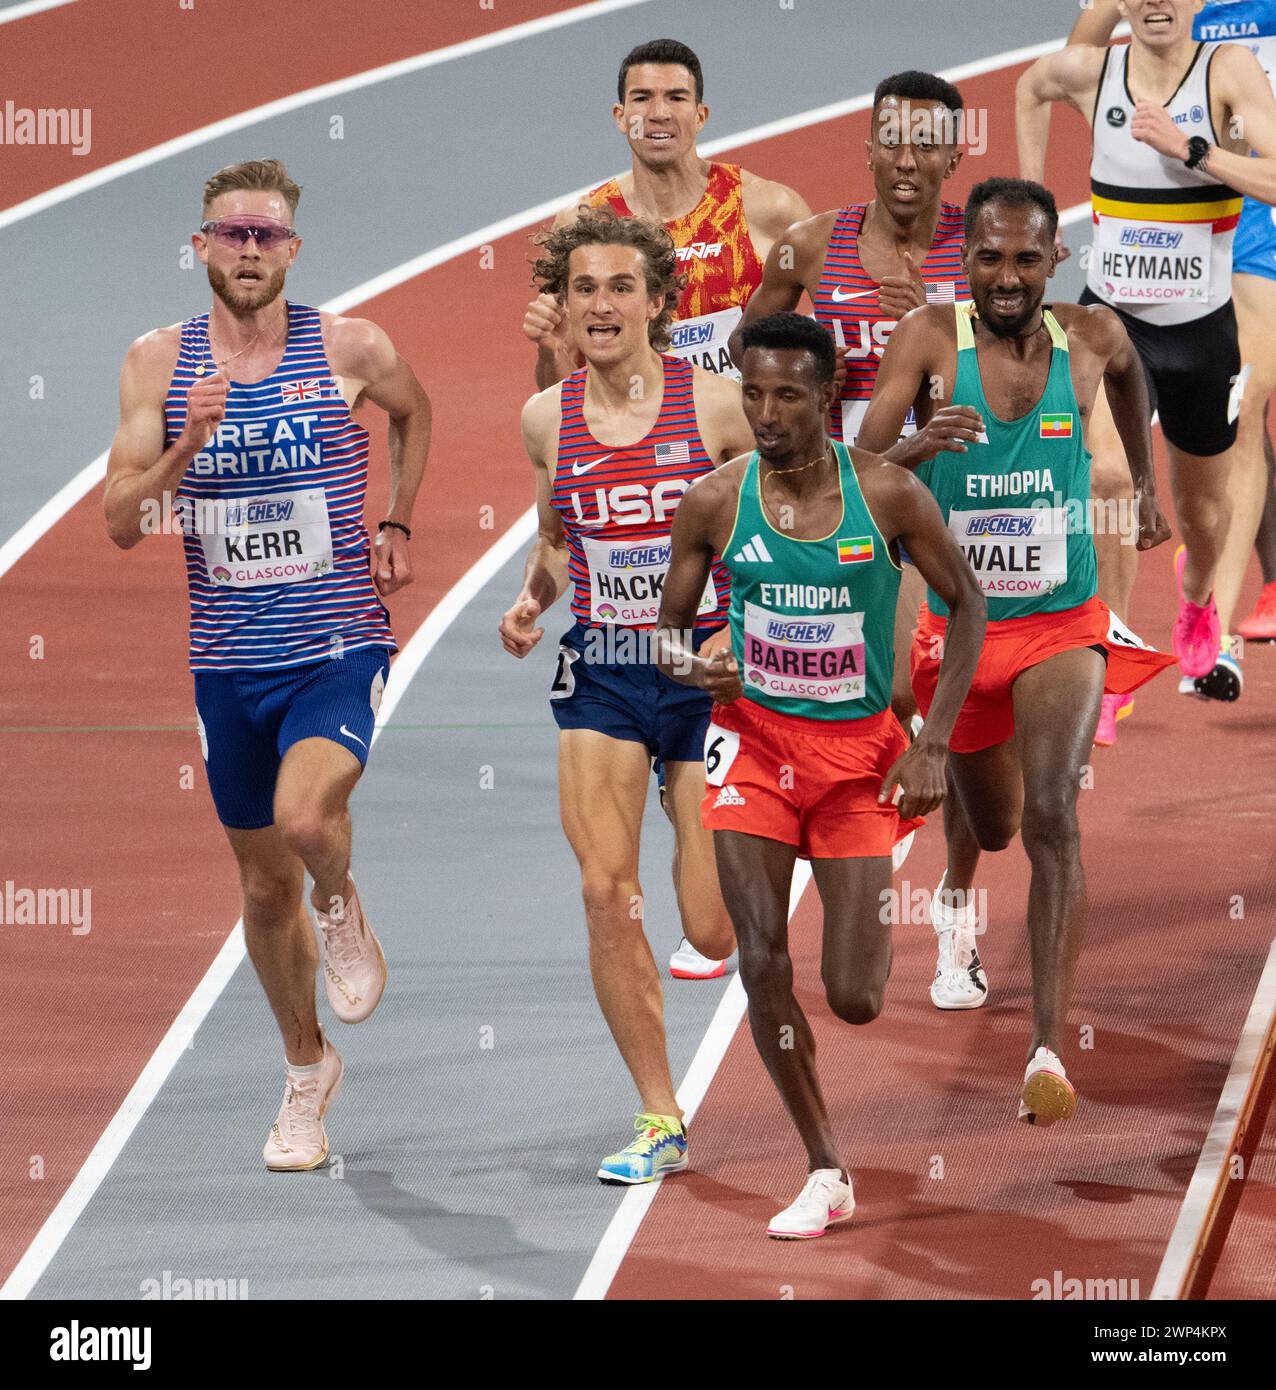 Josh Kerr aus Großbritannien, Olin Hacker aus den USA, Selemon Barega und GetNet Wale aus Äthiopien traten im 3000-m-Herrenfinale der World Athleti an Stockfoto